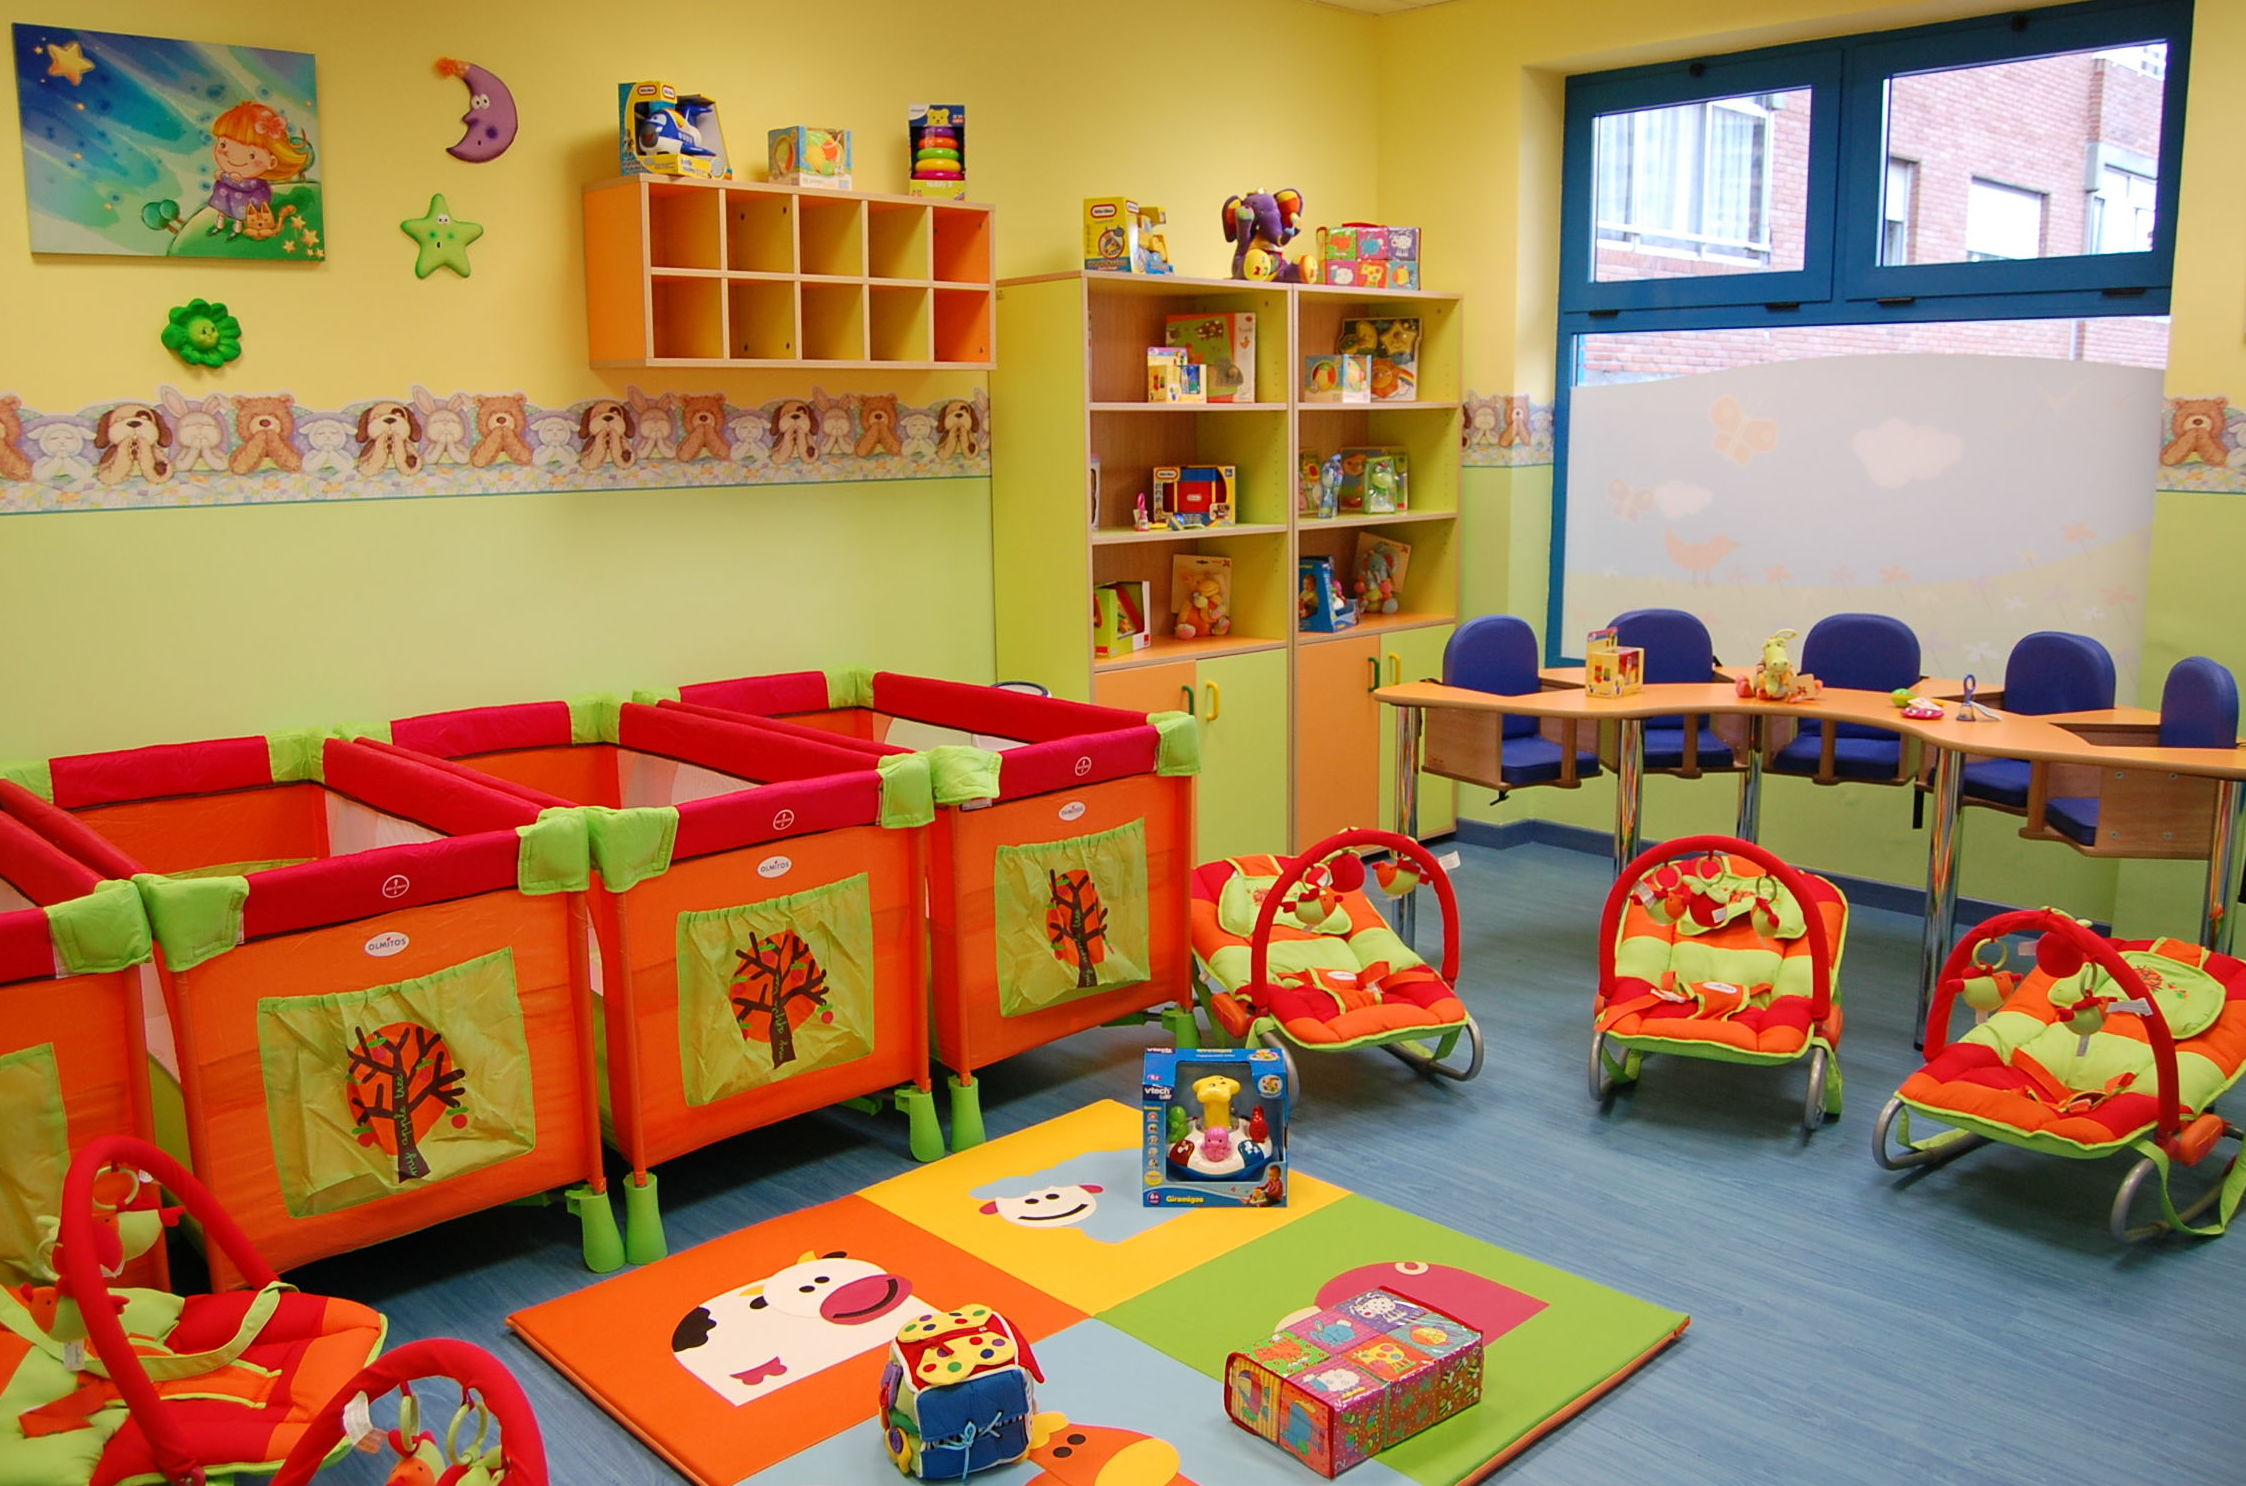 Foto 11 de Guarderías y Escuelas infantiles en Madrid | Peques School